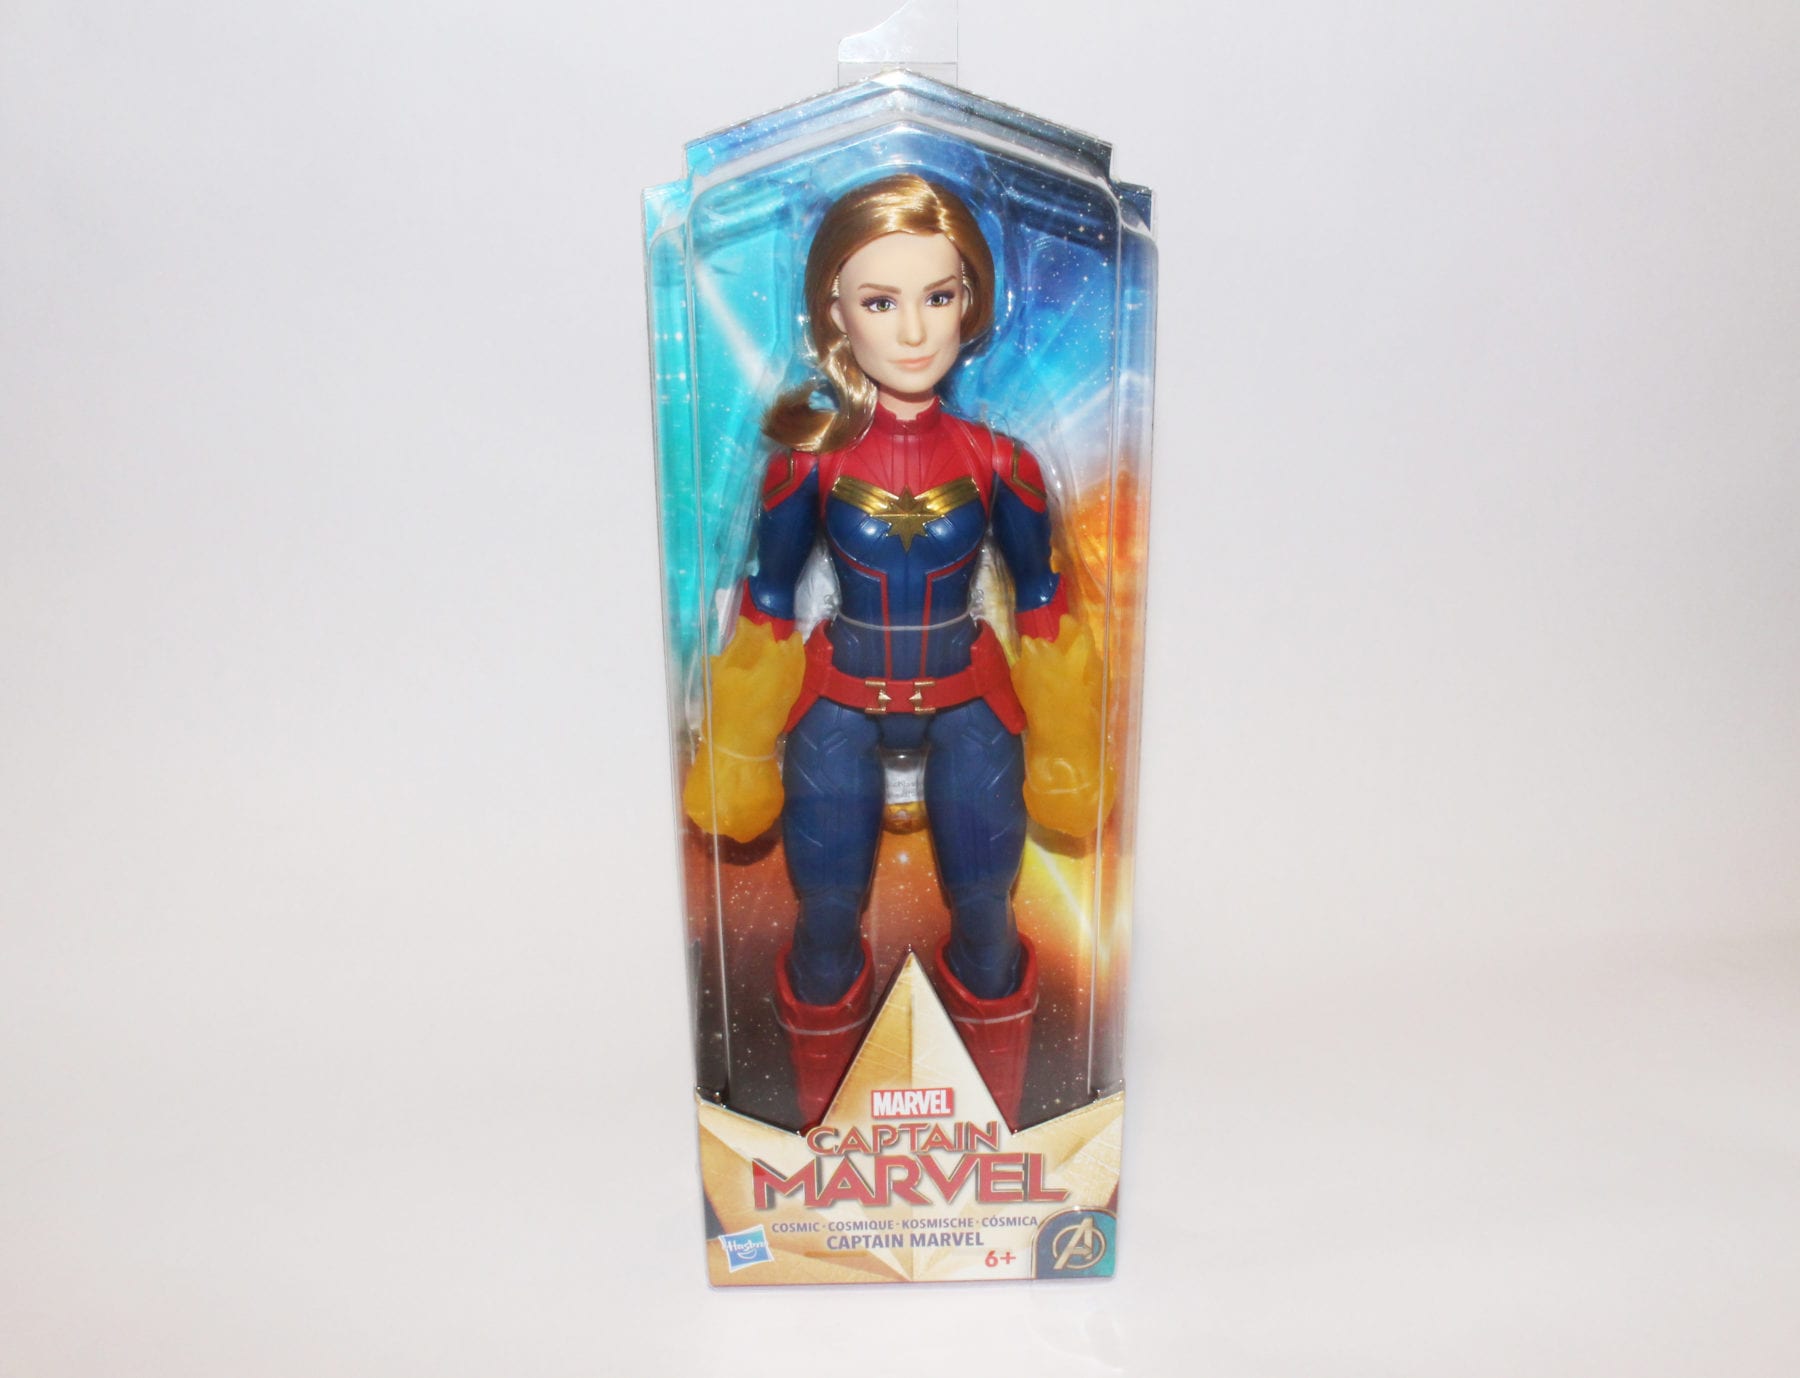 Las muñecas y figuras de acción Captain Marvel de Hasbro están disponibles ahora